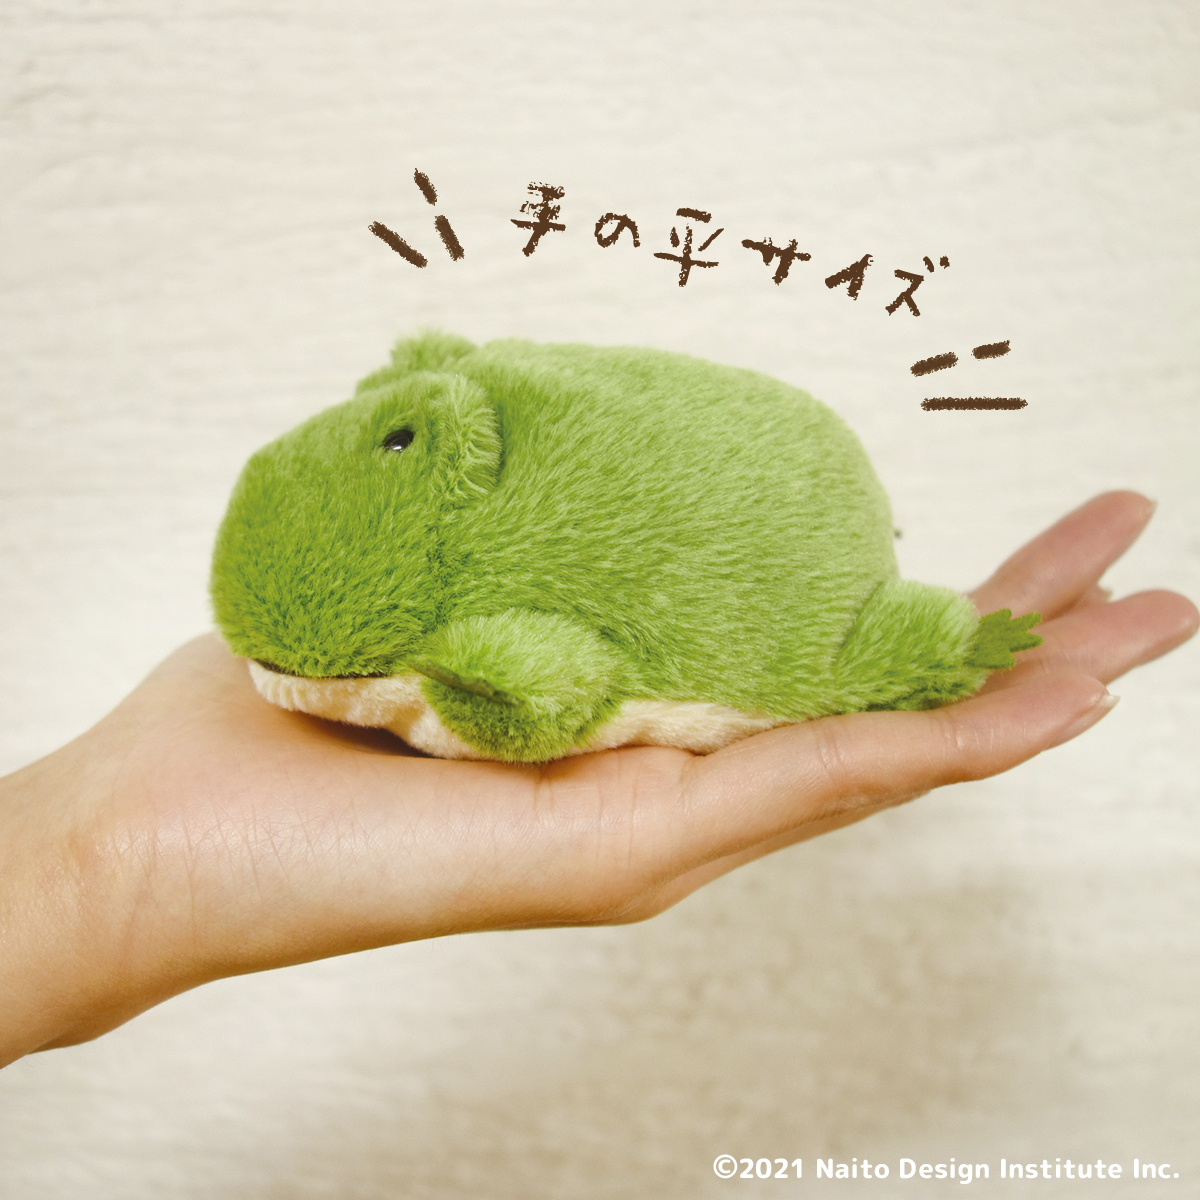 新品日本内藤设计陆地动物公仔青蛙蛤蟆毛绒玩具掌上玩偶柔软礼物